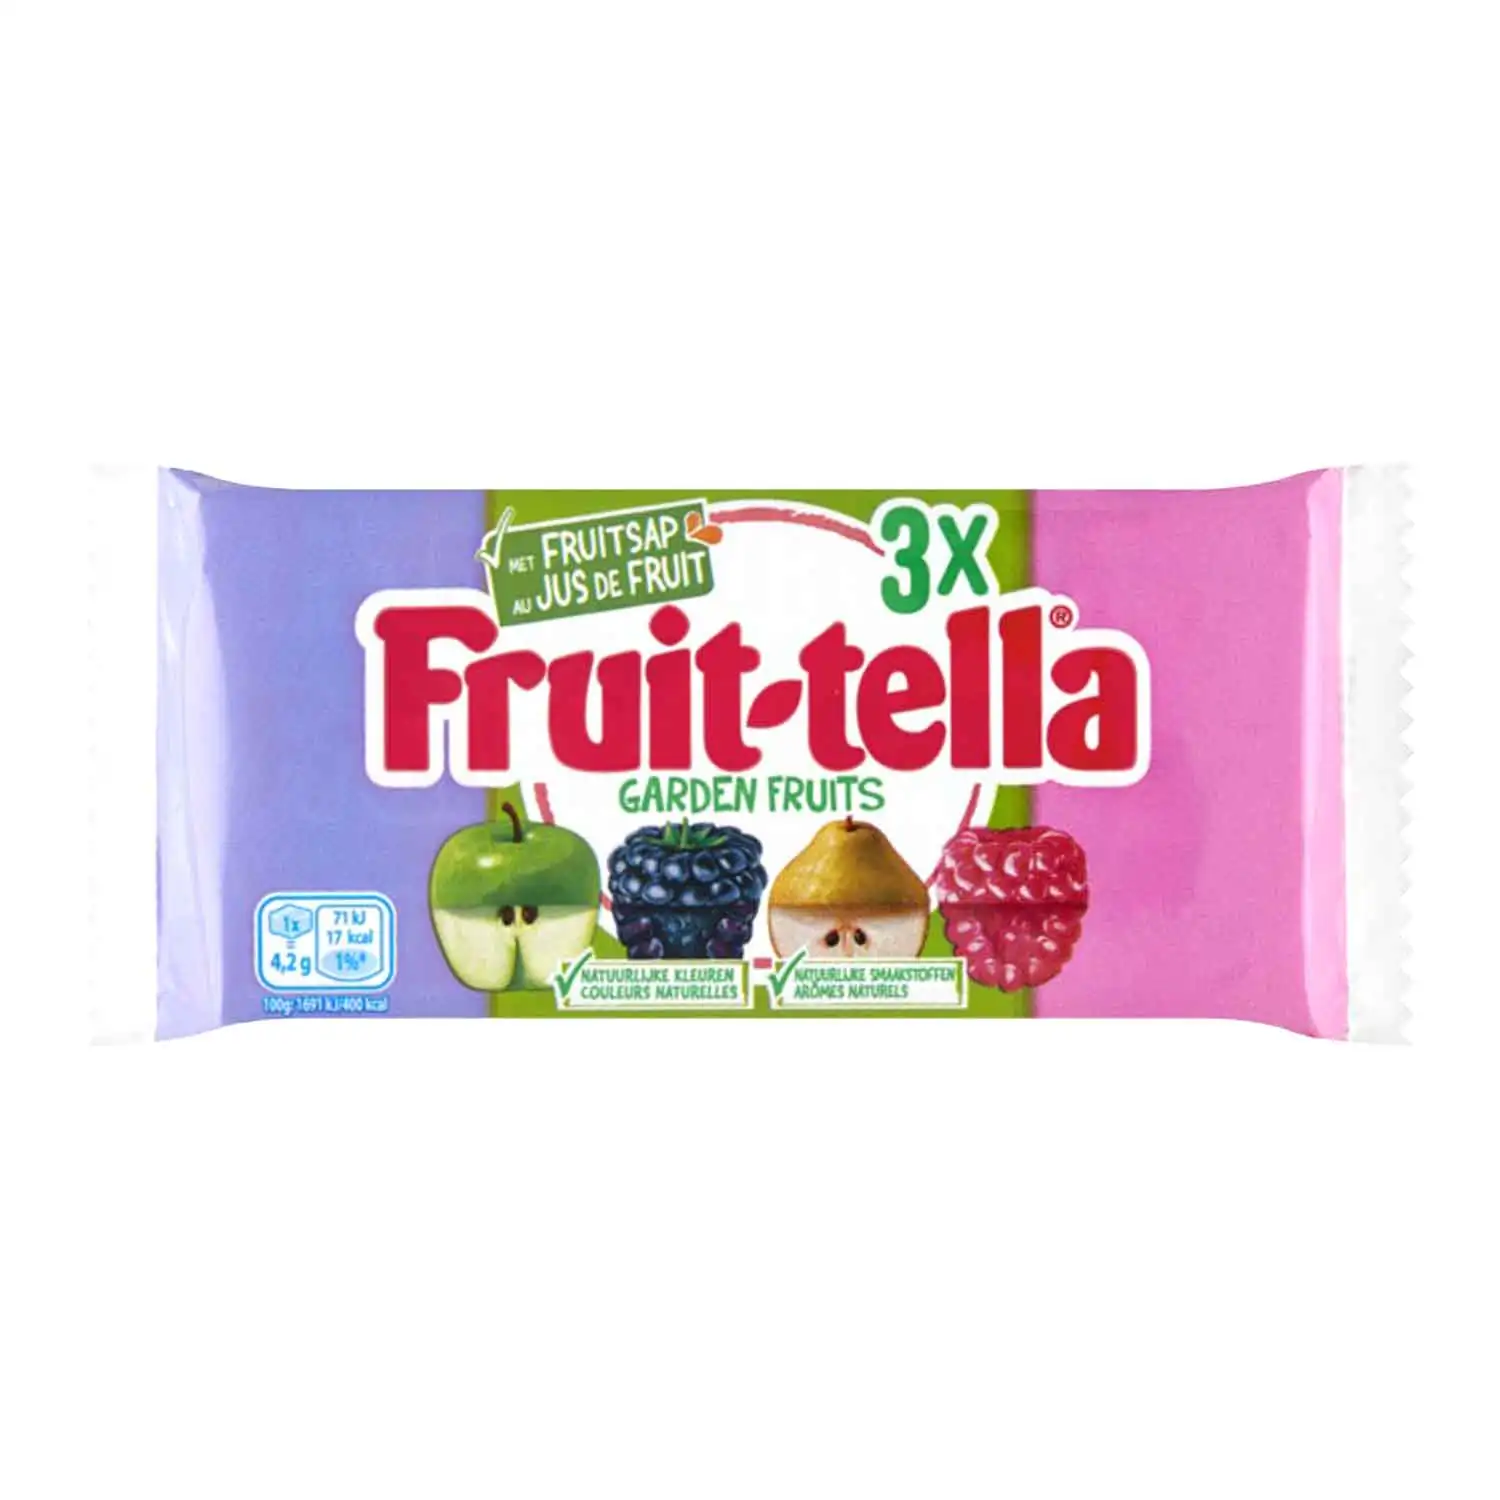 3x Fruit-tella garden fruit 41g - Buy at Real Tobacco